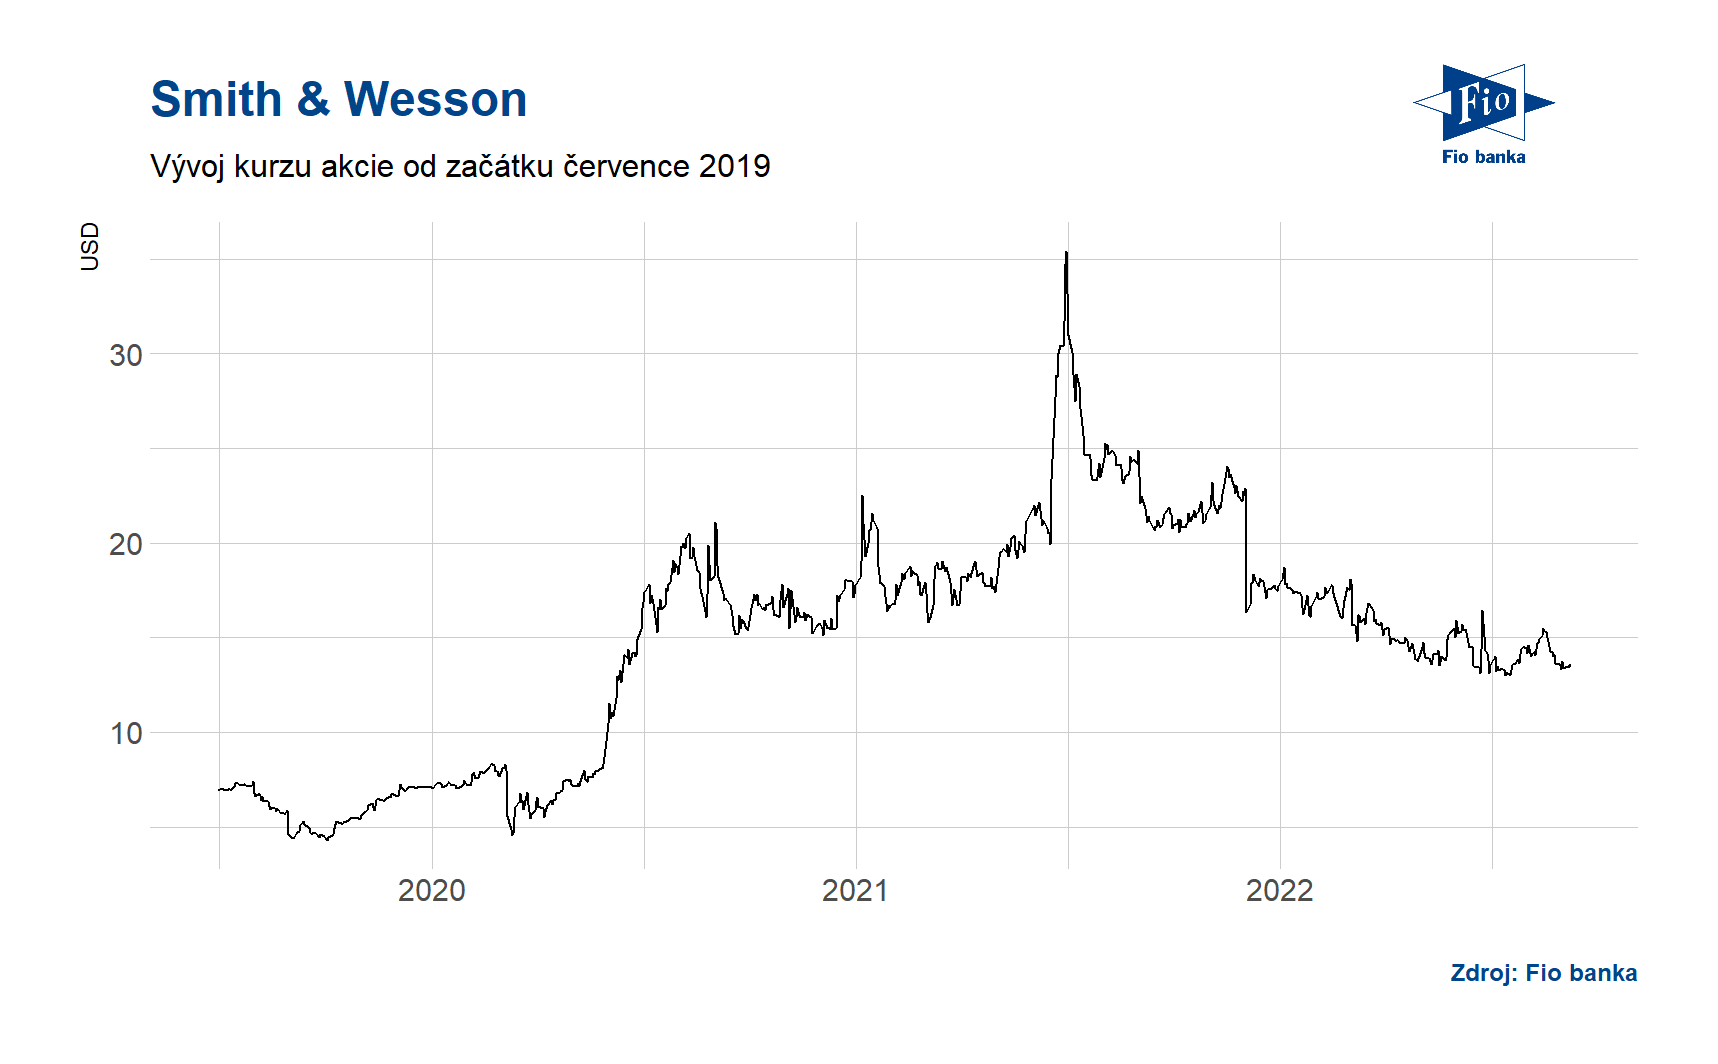 Vývoj ceny akcií společnosti Smith & Wesson